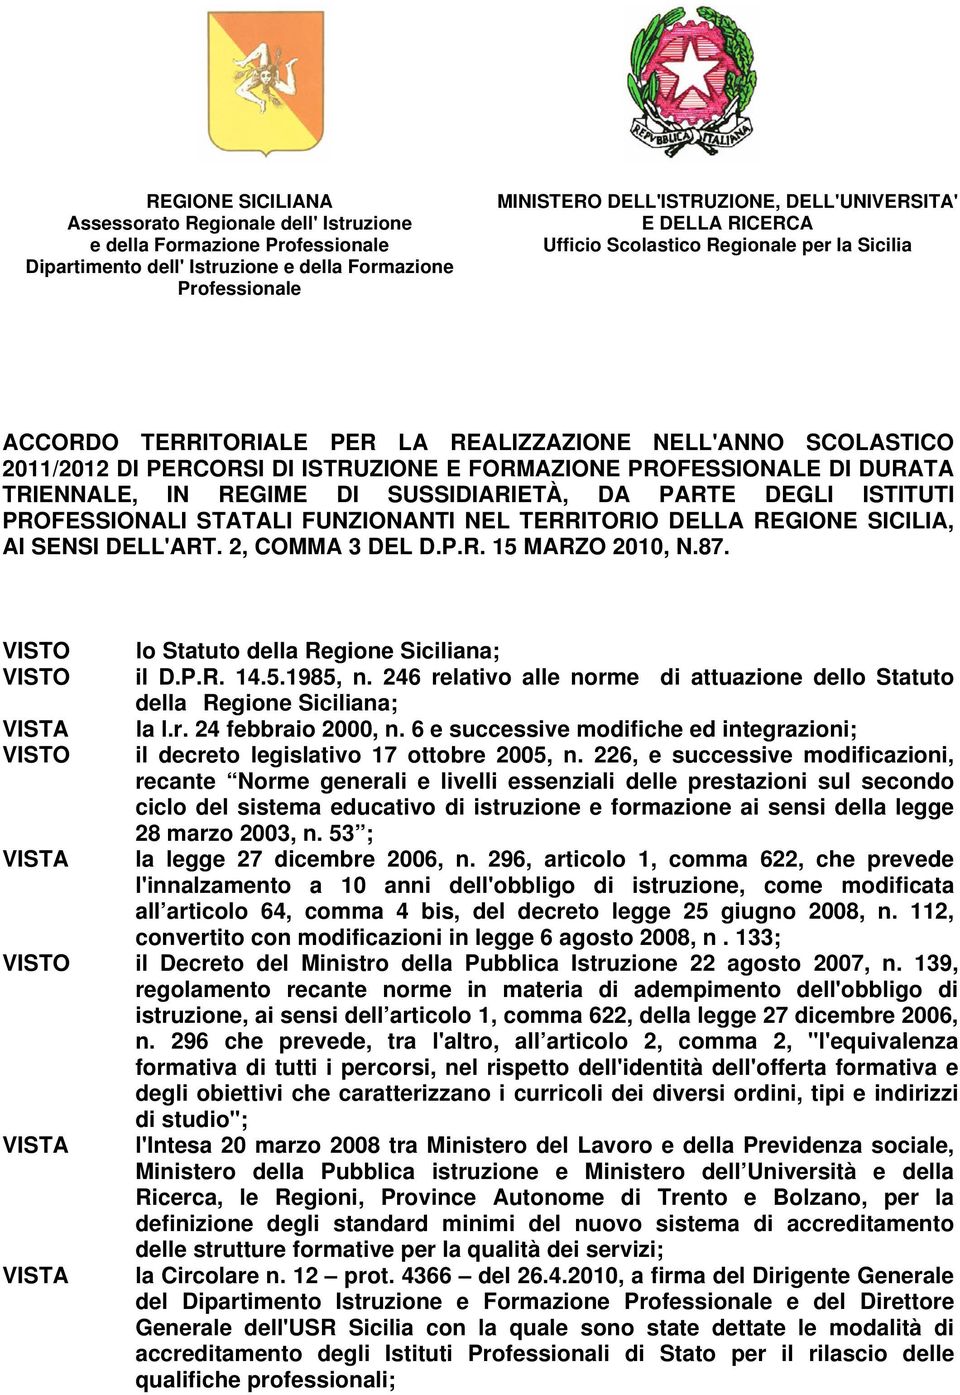 TRIENNALE, IN REGIME DI SUSSIDIARIETÀ, DA PARTE DEGLI ISTITUTI PROFESSIONALI STATALI FUNZIONANTI NEL TERRITORIO DELLA REGIONE SICILIA, AI SENSI DELL'ART. 2, COMMA 3 DEL D.P.R. 15 MARZO 2010, N.87.